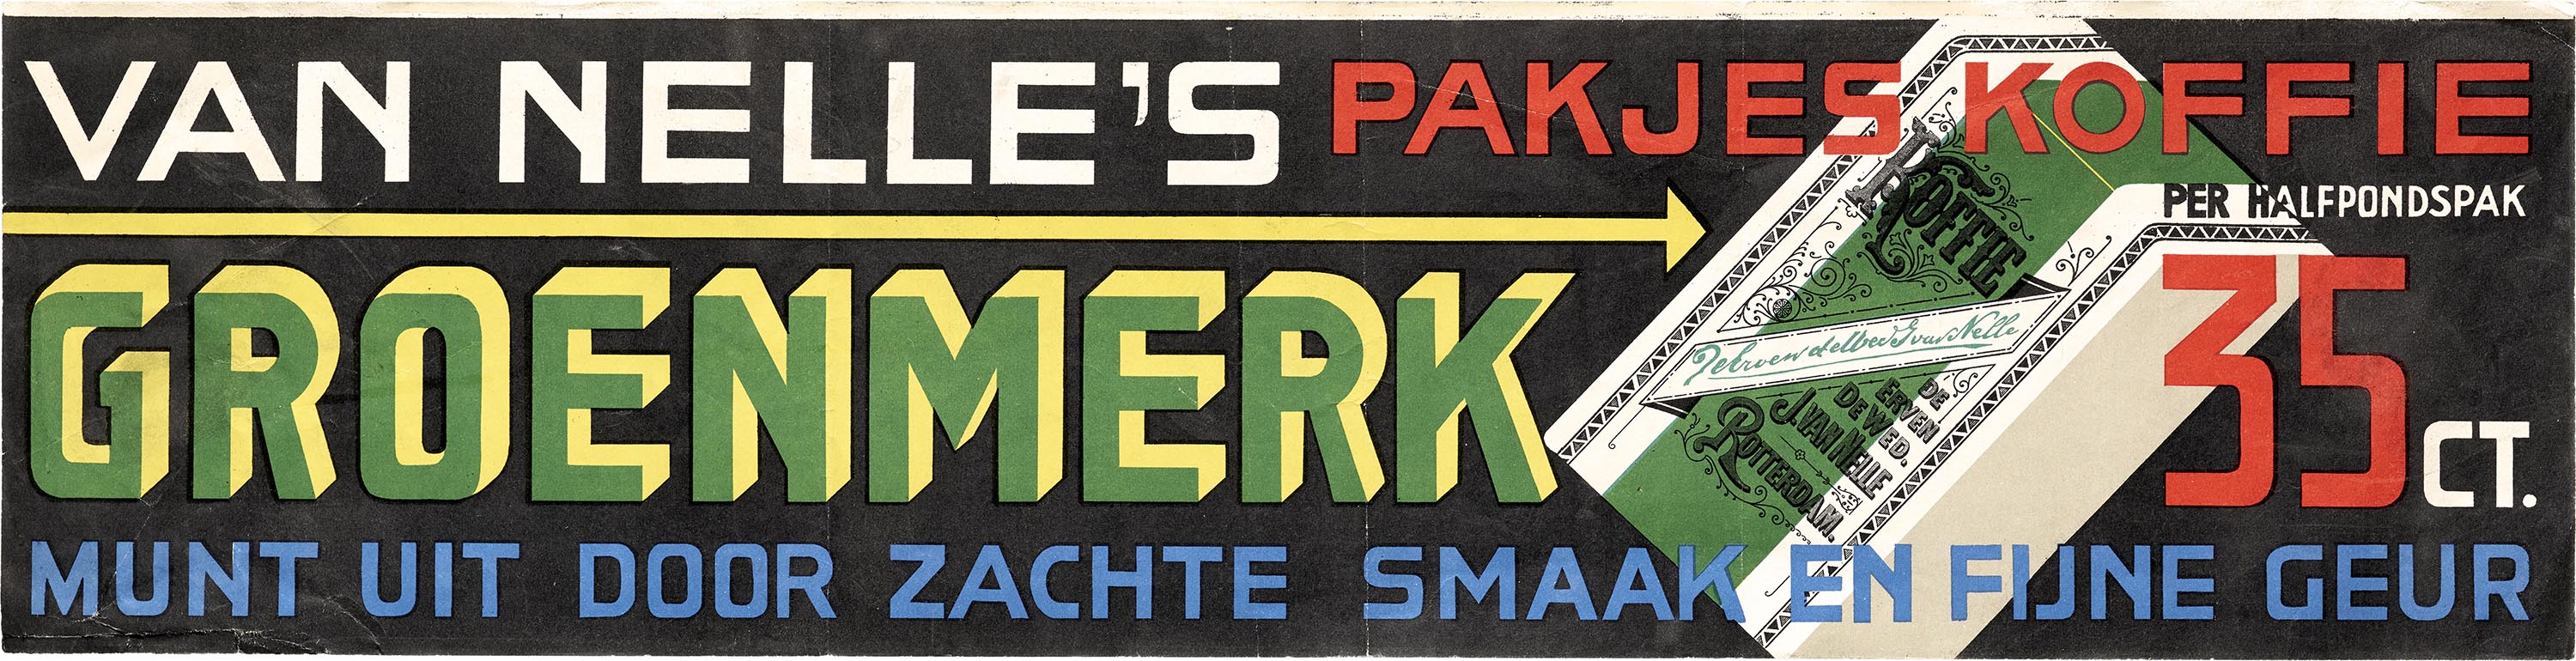 Jacob Jongert, Van Nelle's Groen Merk coffee label, Rotterdam, ca. 1930